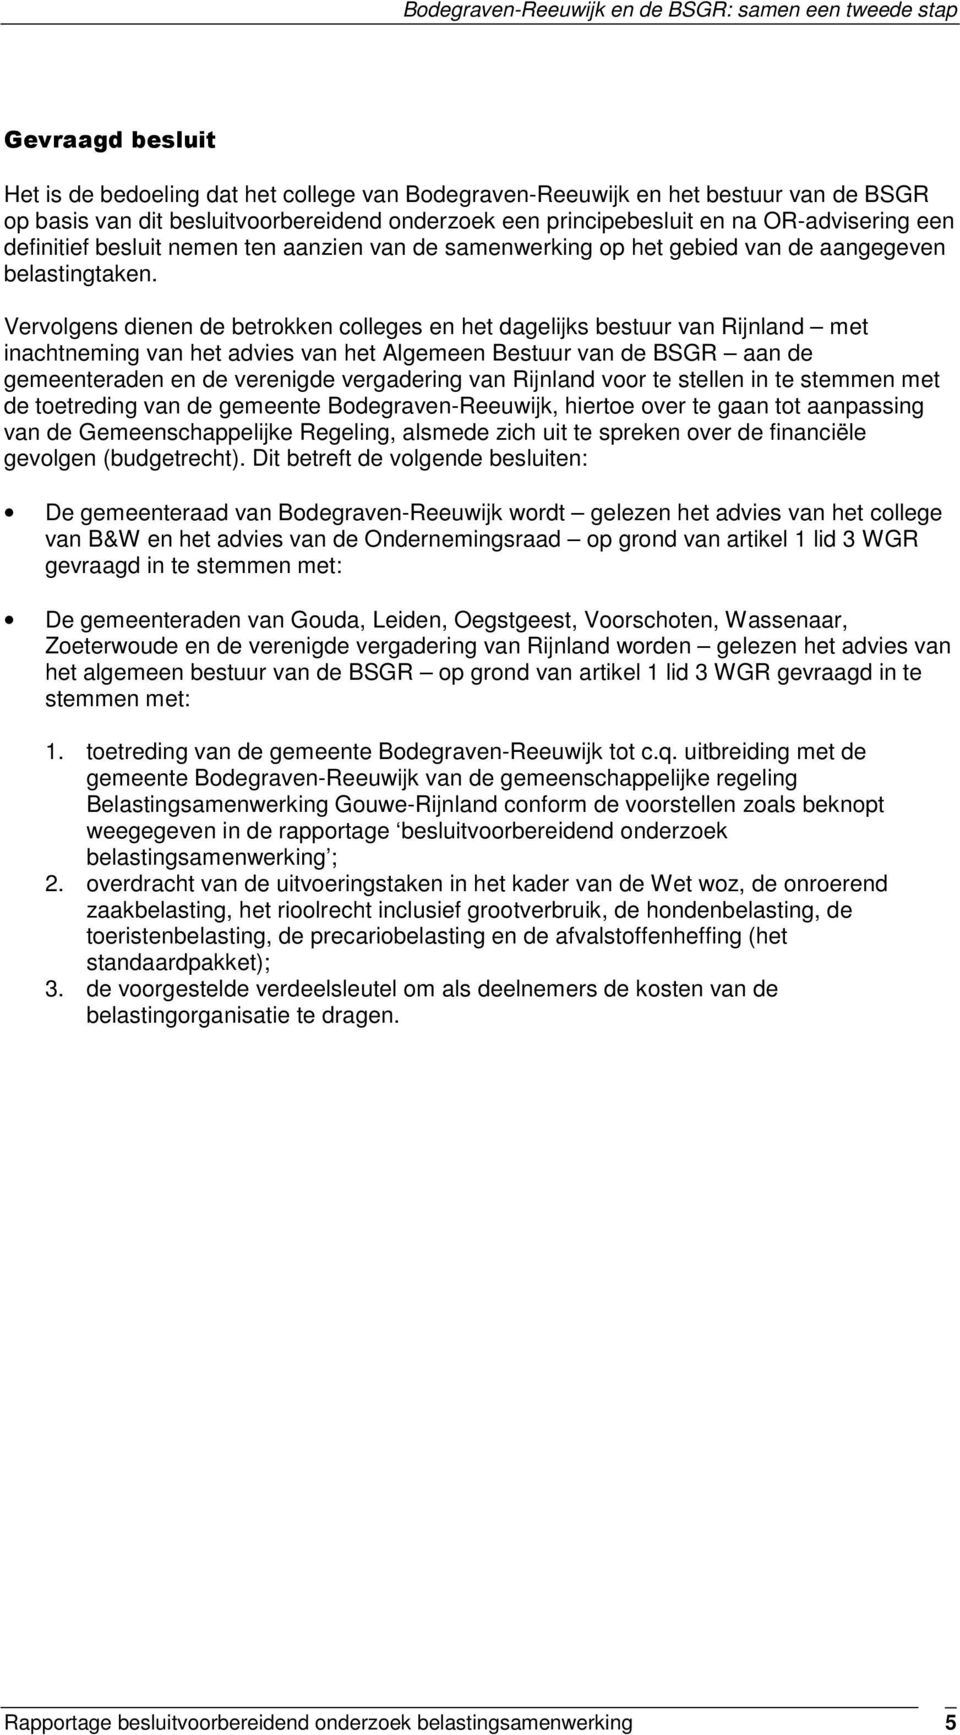 Vervolgens dienen de betrokken colleges en het dagelijks bestuur van Rijnland met inachtneming van het advies van het Algemeen Bestuur van de BSGR aan de gemeenteraden en de verenigde vergadering van